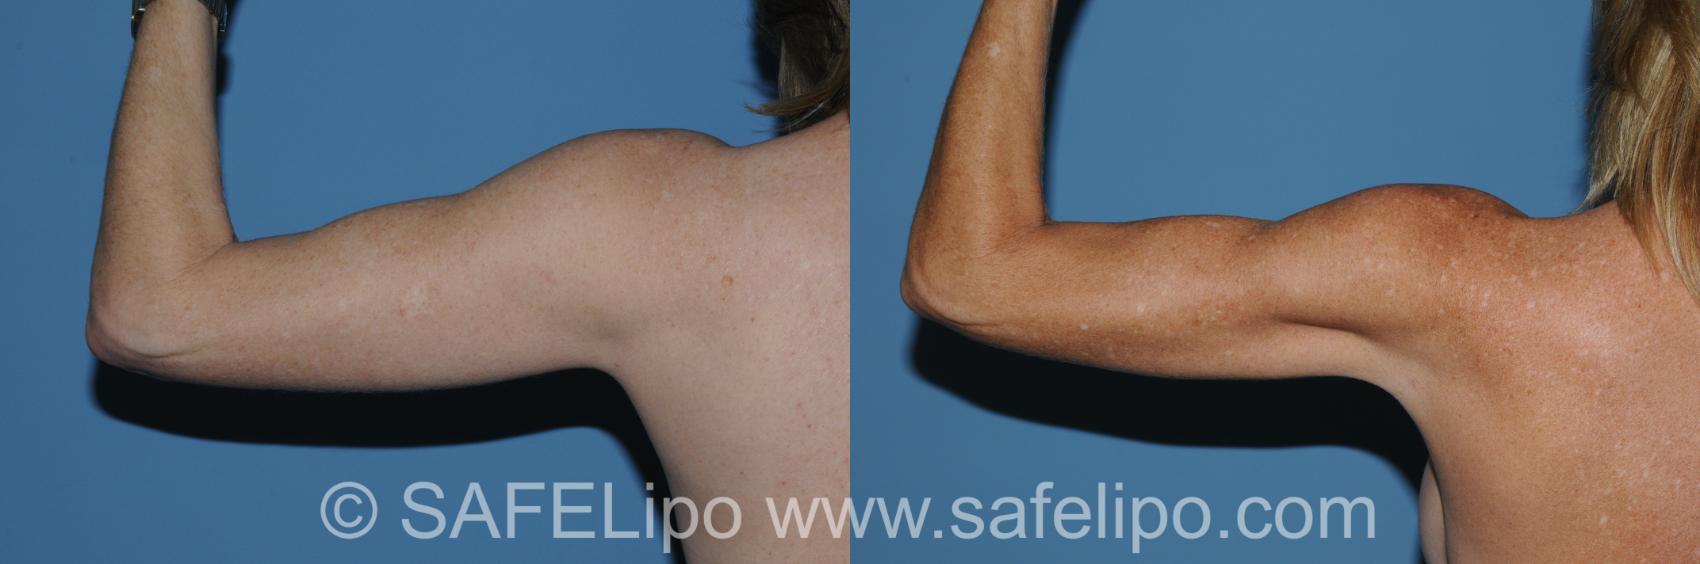 SAFELipo Back Left Flexed Photo, Shreveport, LA, The Wall Center for Plastic Surgery, Case 296